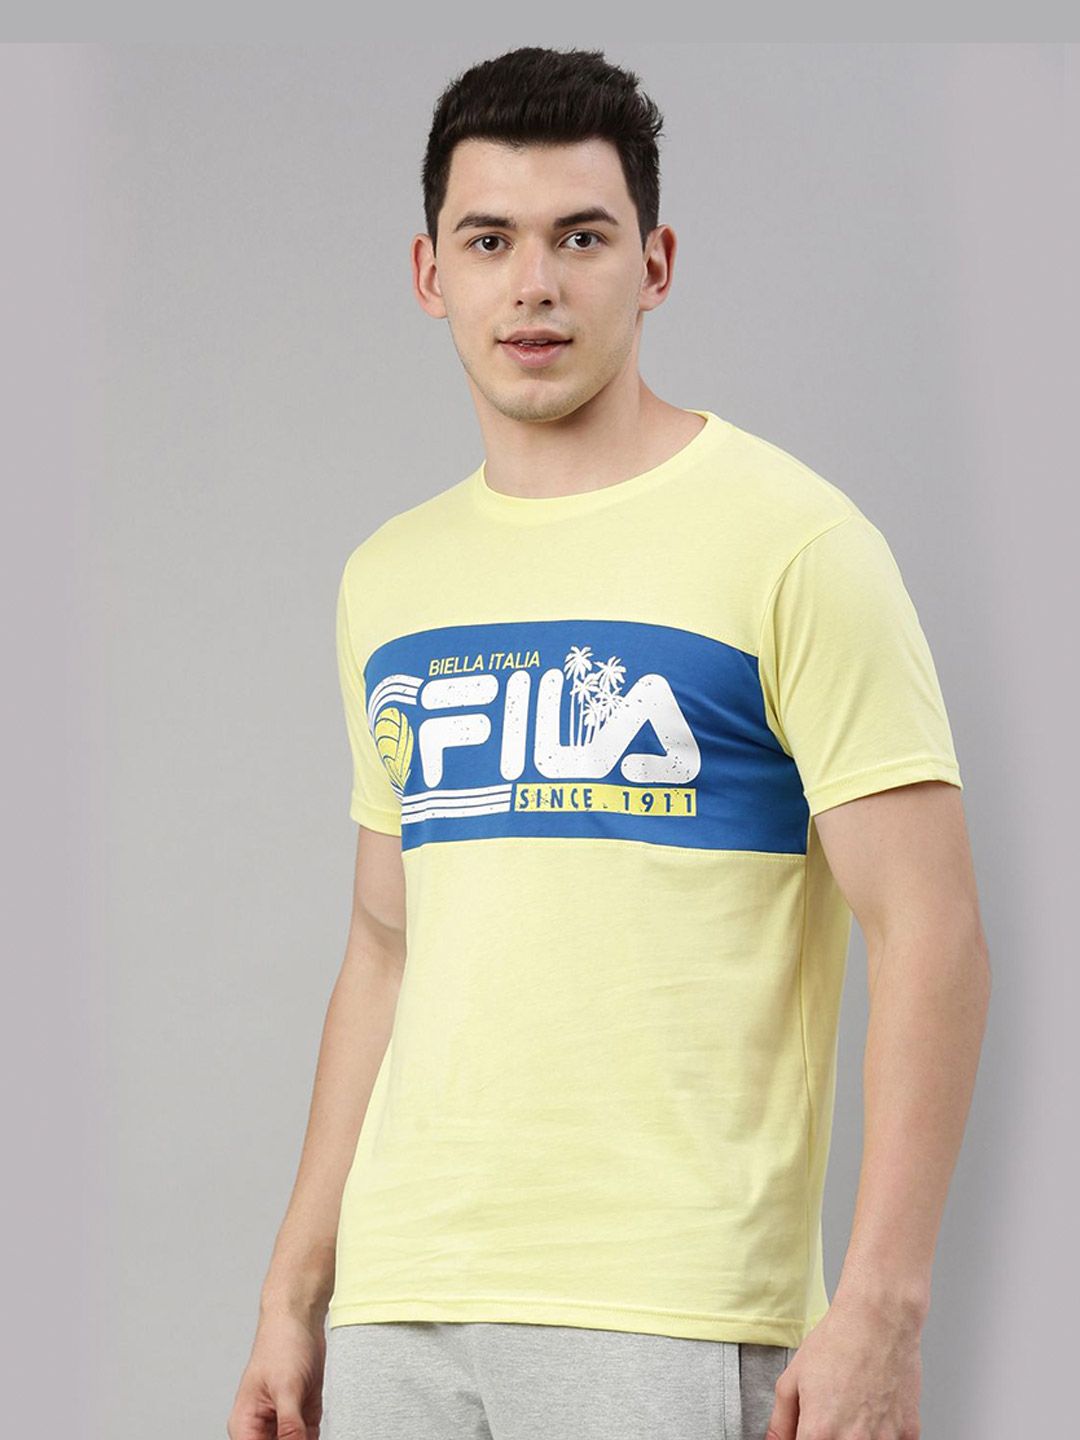 FASO NEW Multicolor Cotton Round Neck T-Shirt- FS4001-SQ